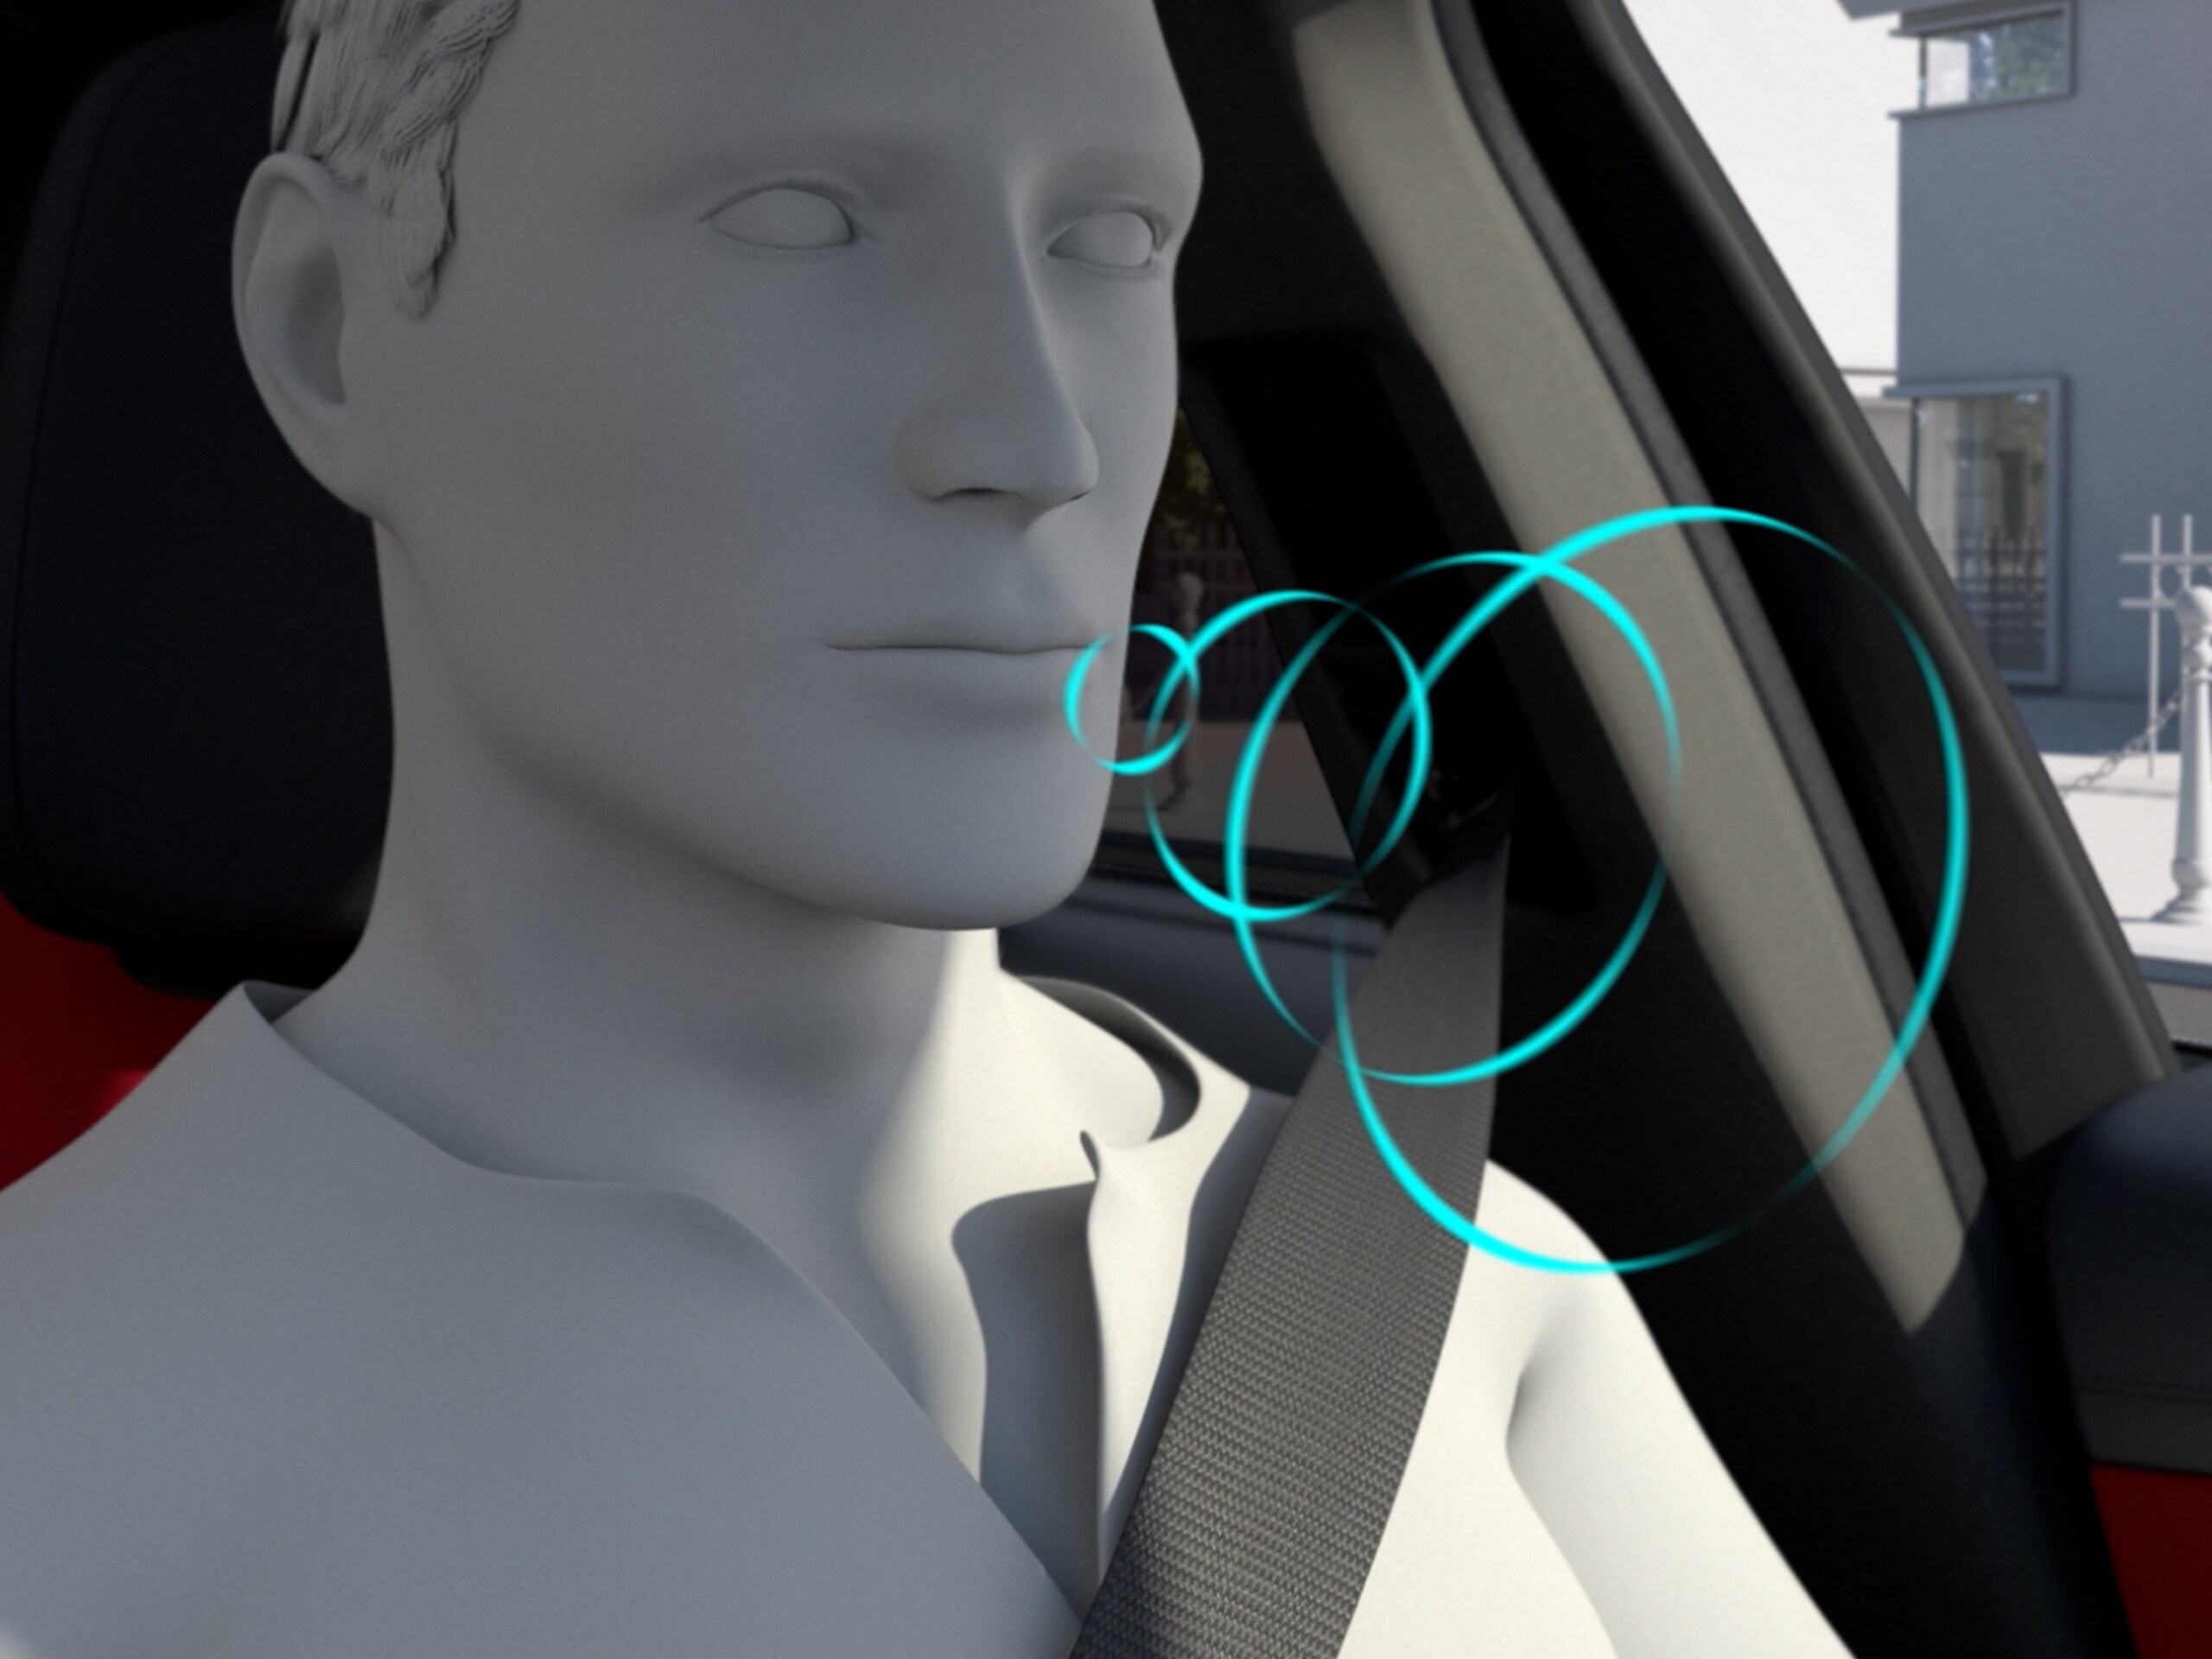 Videoda, yeni Mercedes-Benz C-Serisi Sedan'daki MBUX sesli yardımcının fonksiyonu gösterilmektedir.